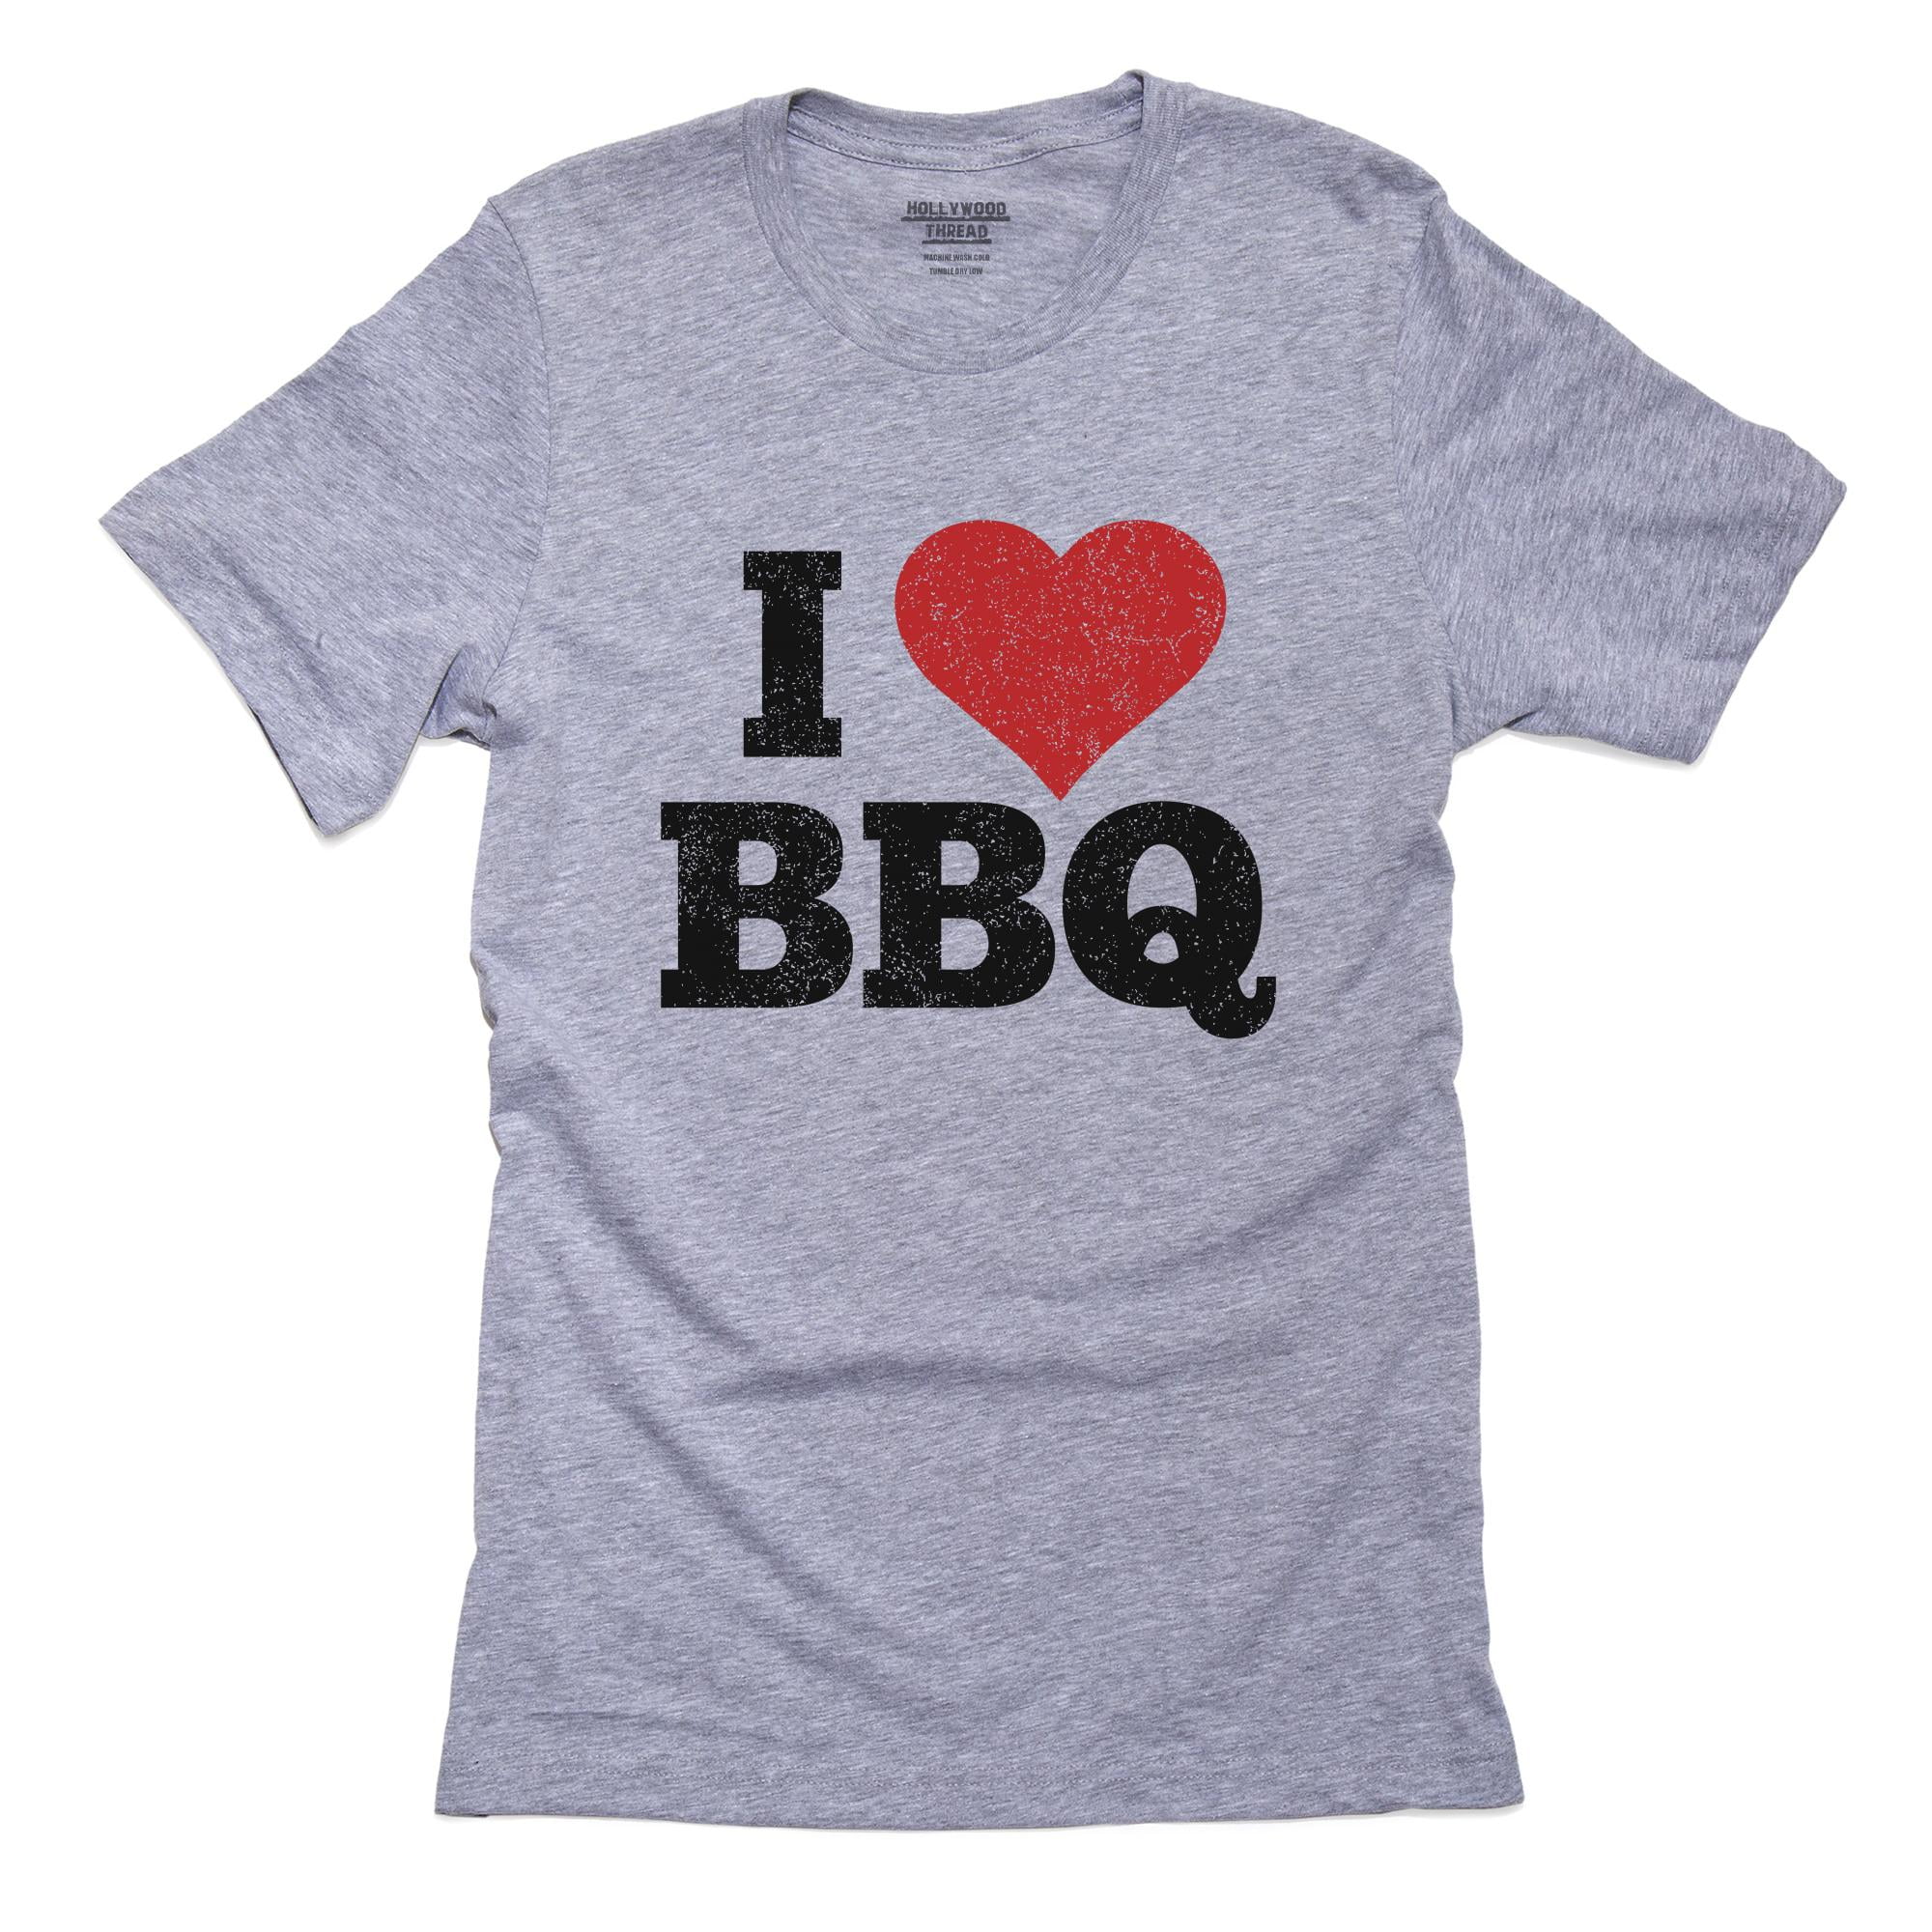 Bedenken regeling Oranje I Love BBQ With Classic Large Red Heart Men's Grey T-Shirt - Walmart.com